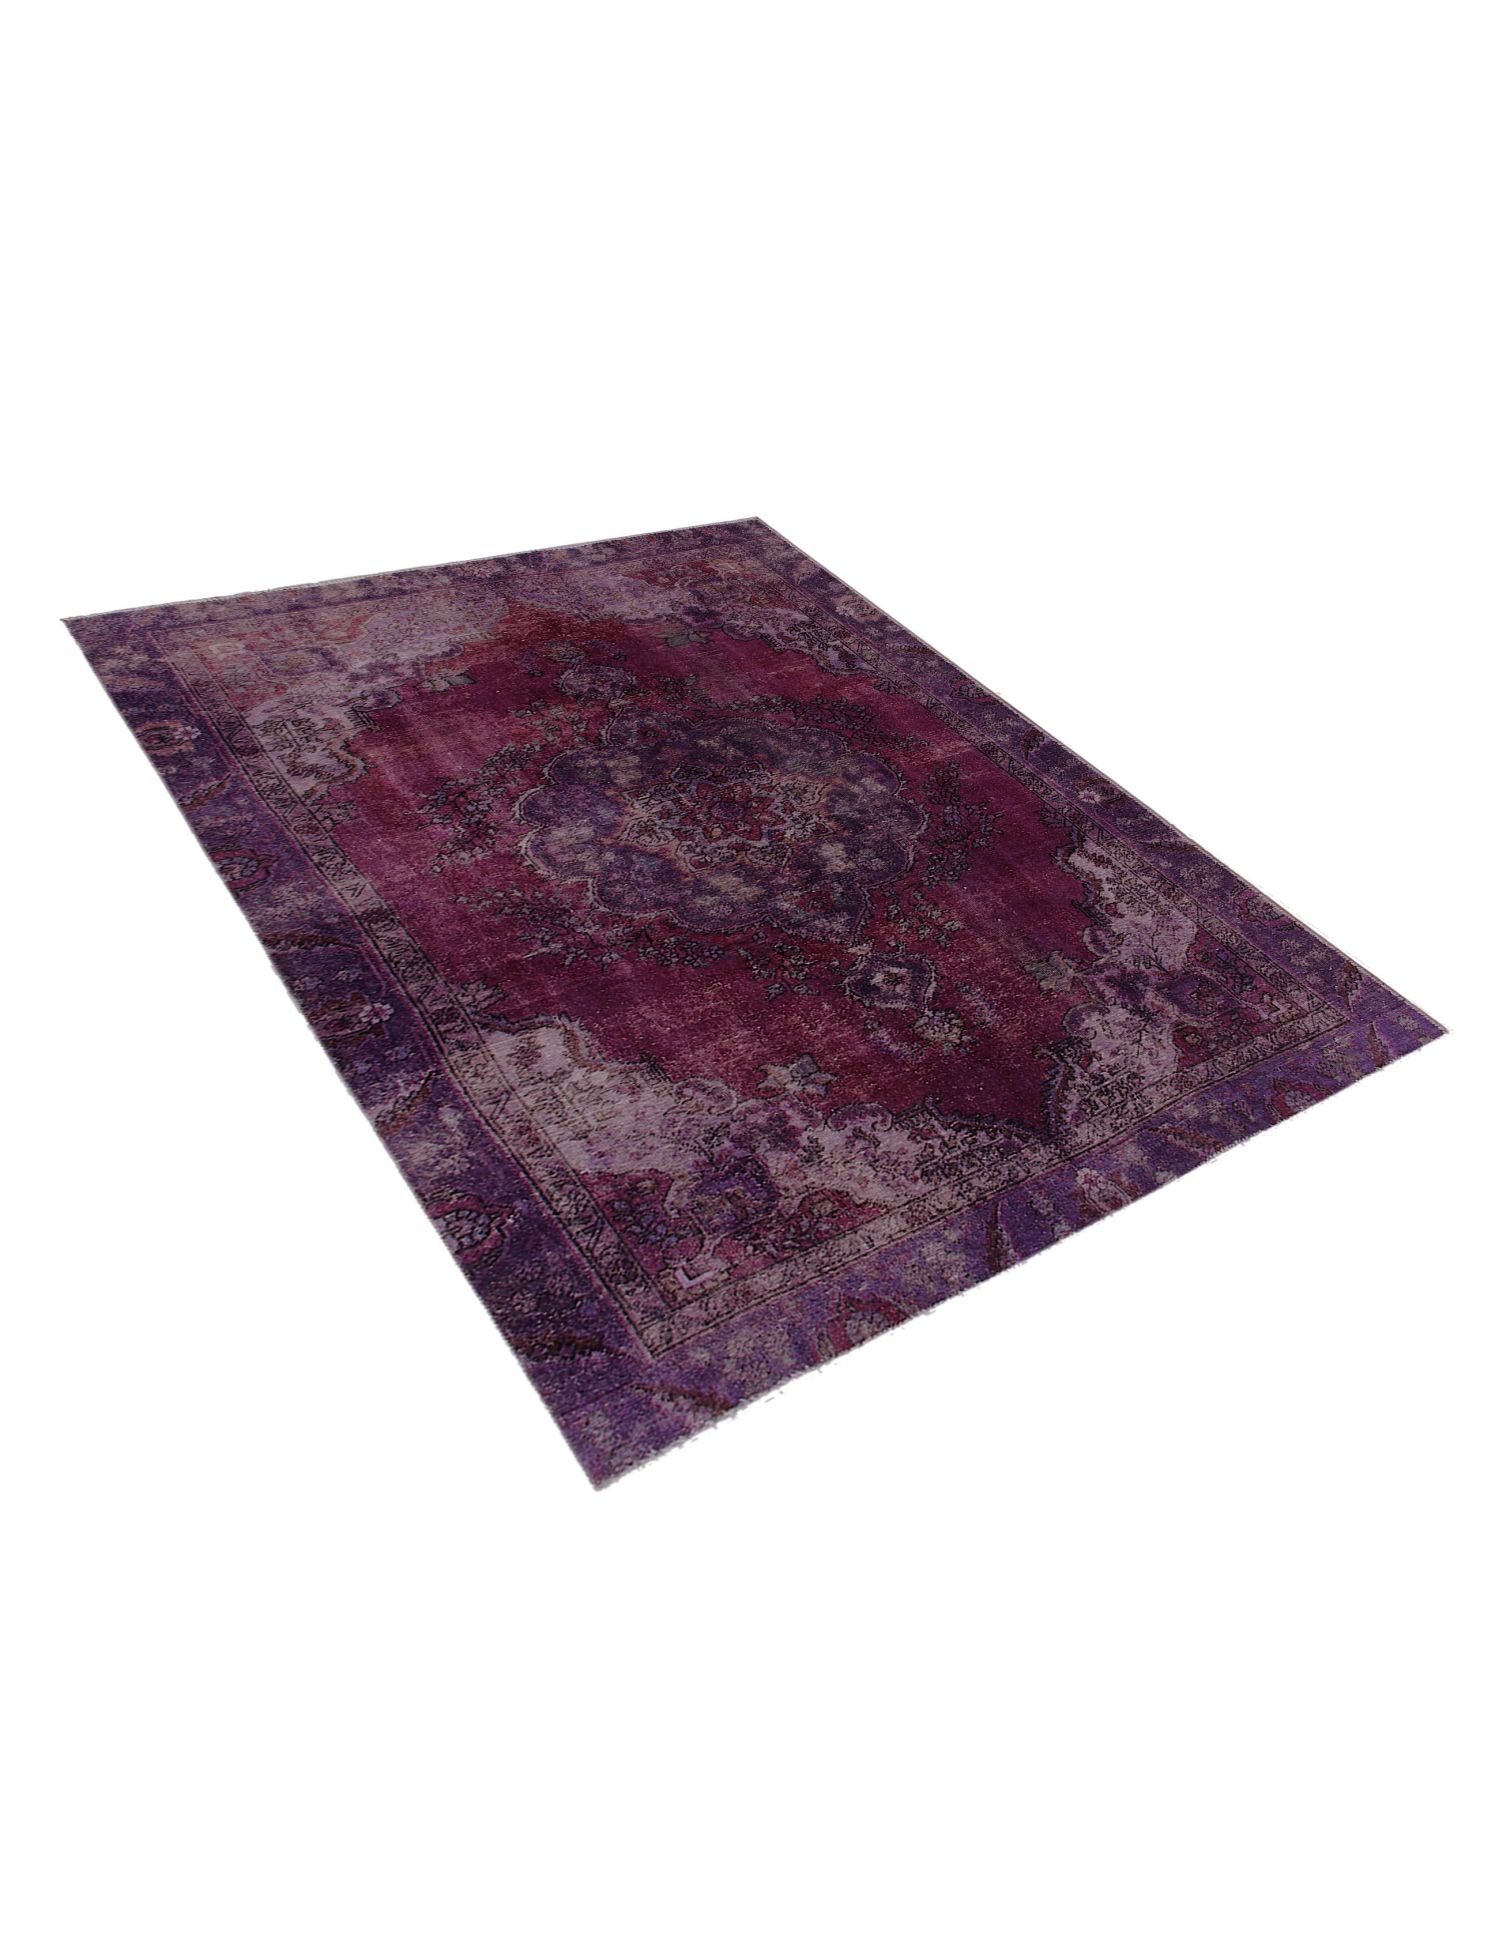 Persischer Vintage Teppich  lila <br/>255 x 185 cm